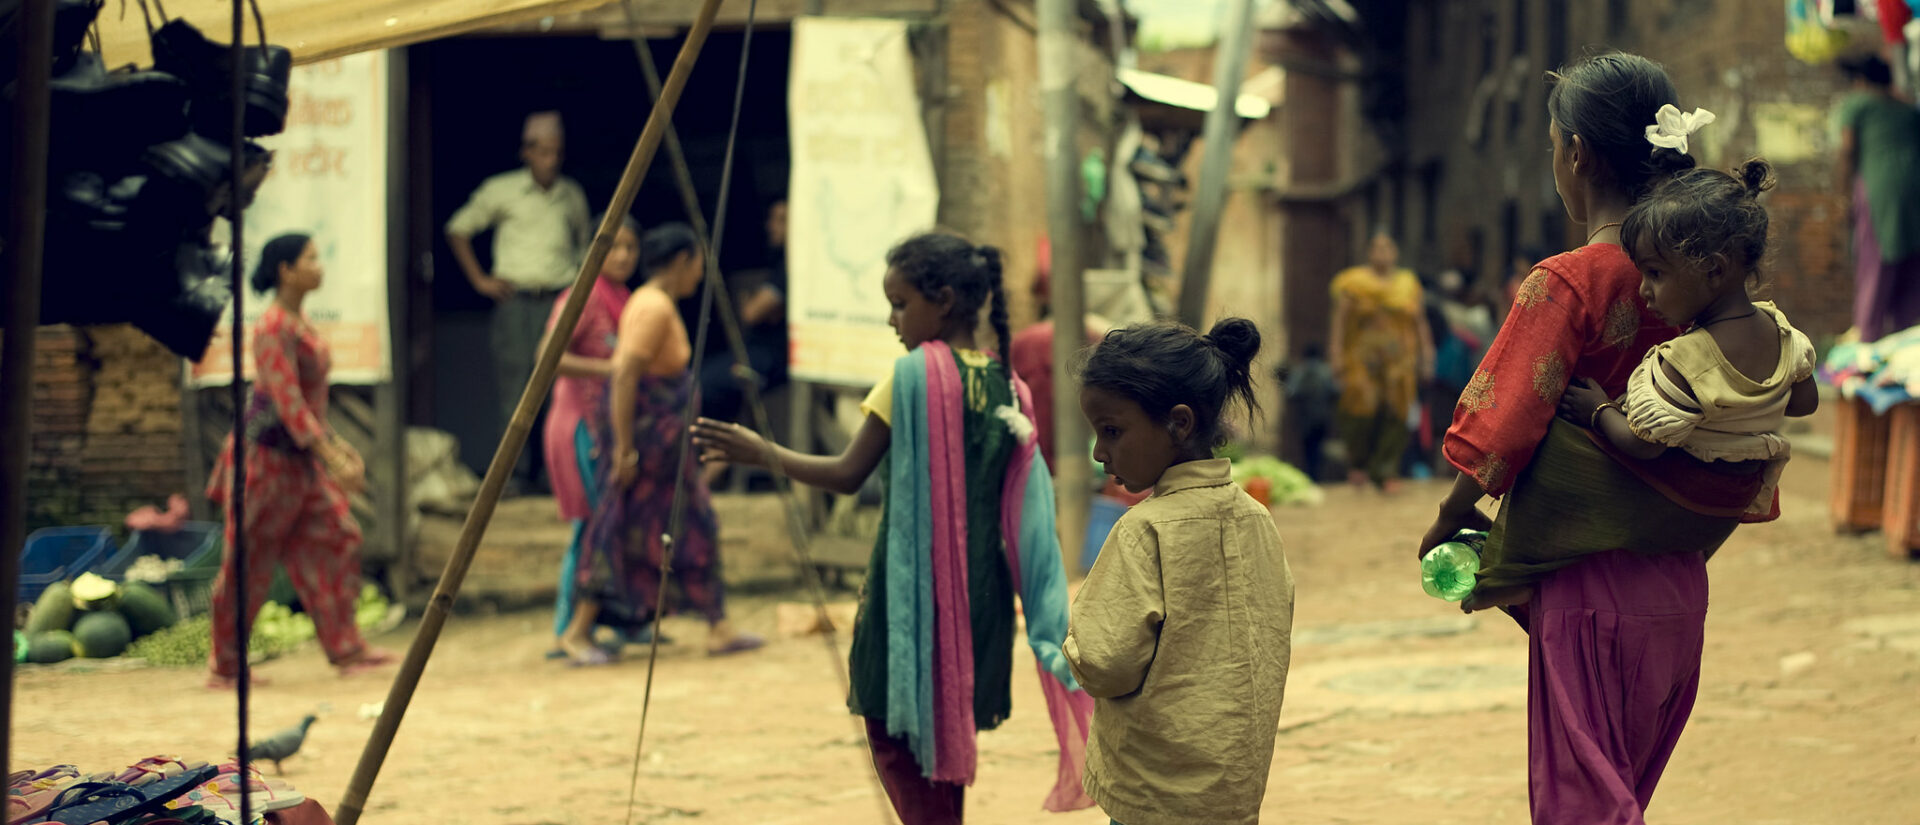 En Inde, les filles et les femmes de la communauté dalit sont particulièrement exposées au risque de viol | photo d'illustration © JOhn H/Flickr/CC BY-ND 2.0